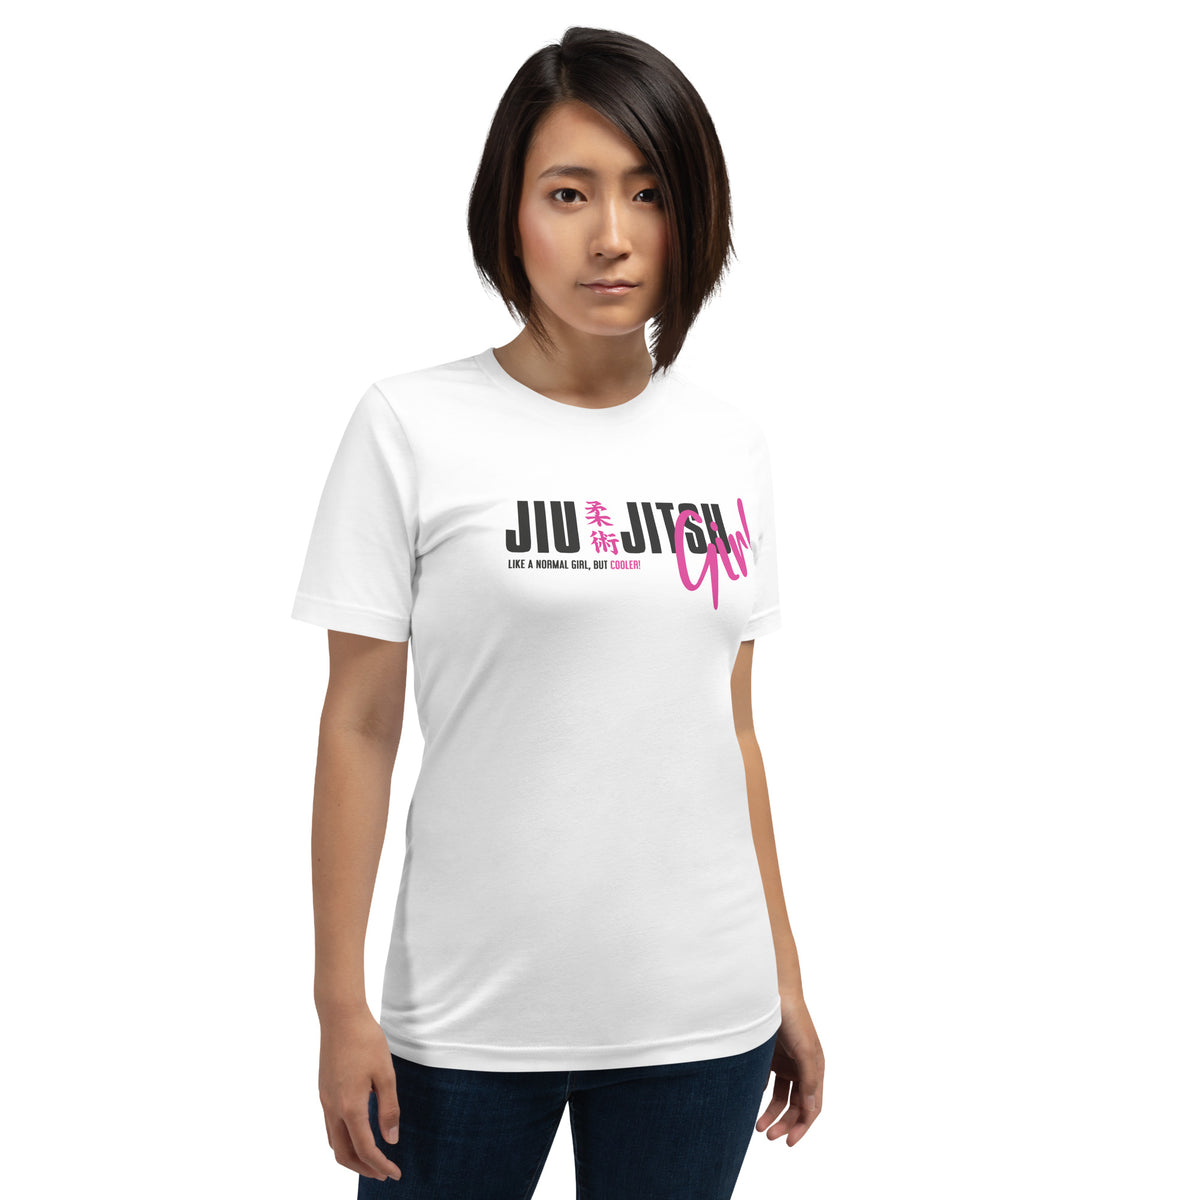 Kanji BJJ Girls Are Cooler Unisex Staple T-Shirt